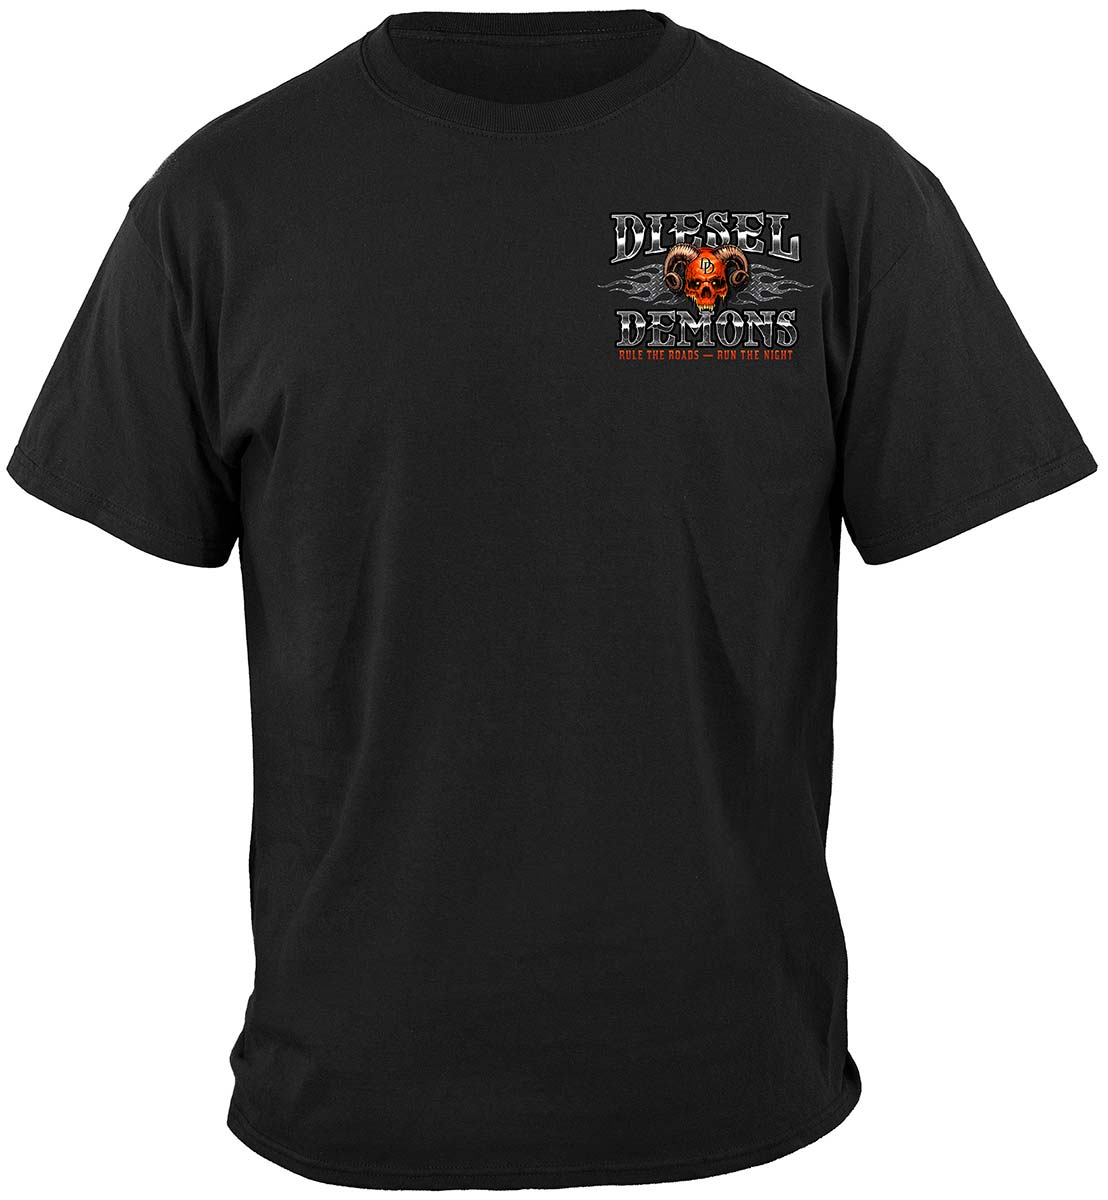 Trucker CTTB Diesel Demon Premium T-Shirt